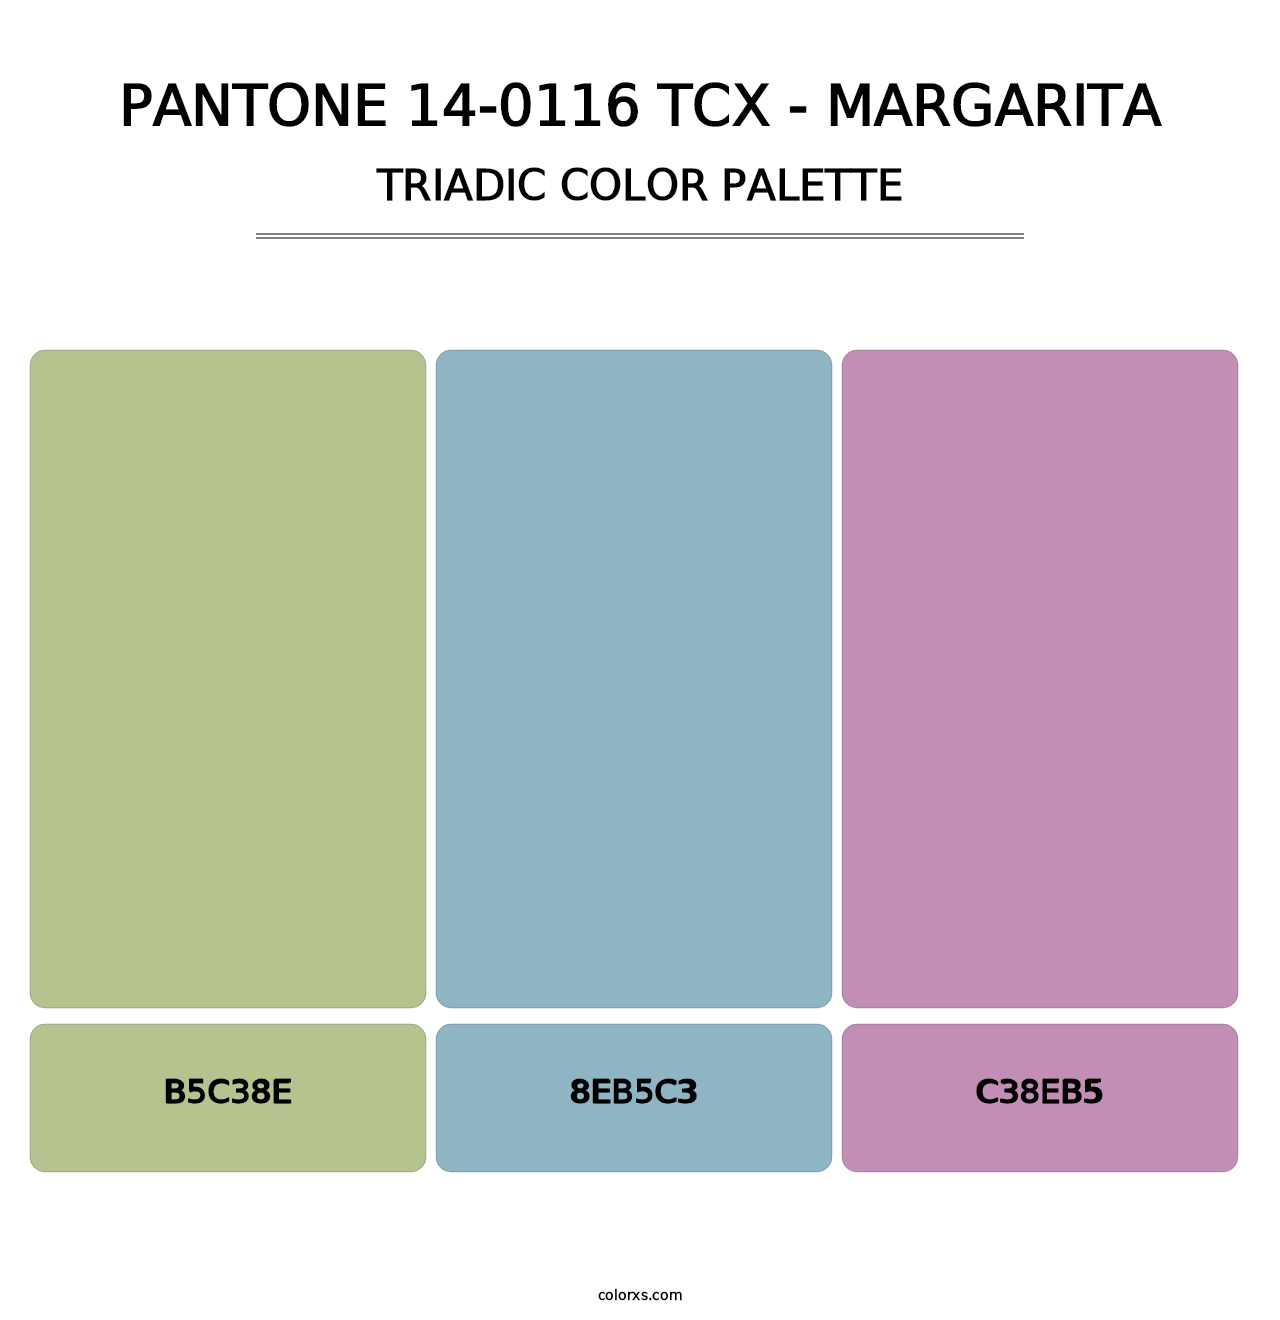 PANTONE 14-0116 TCX - Margarita - Triadic Color Palette